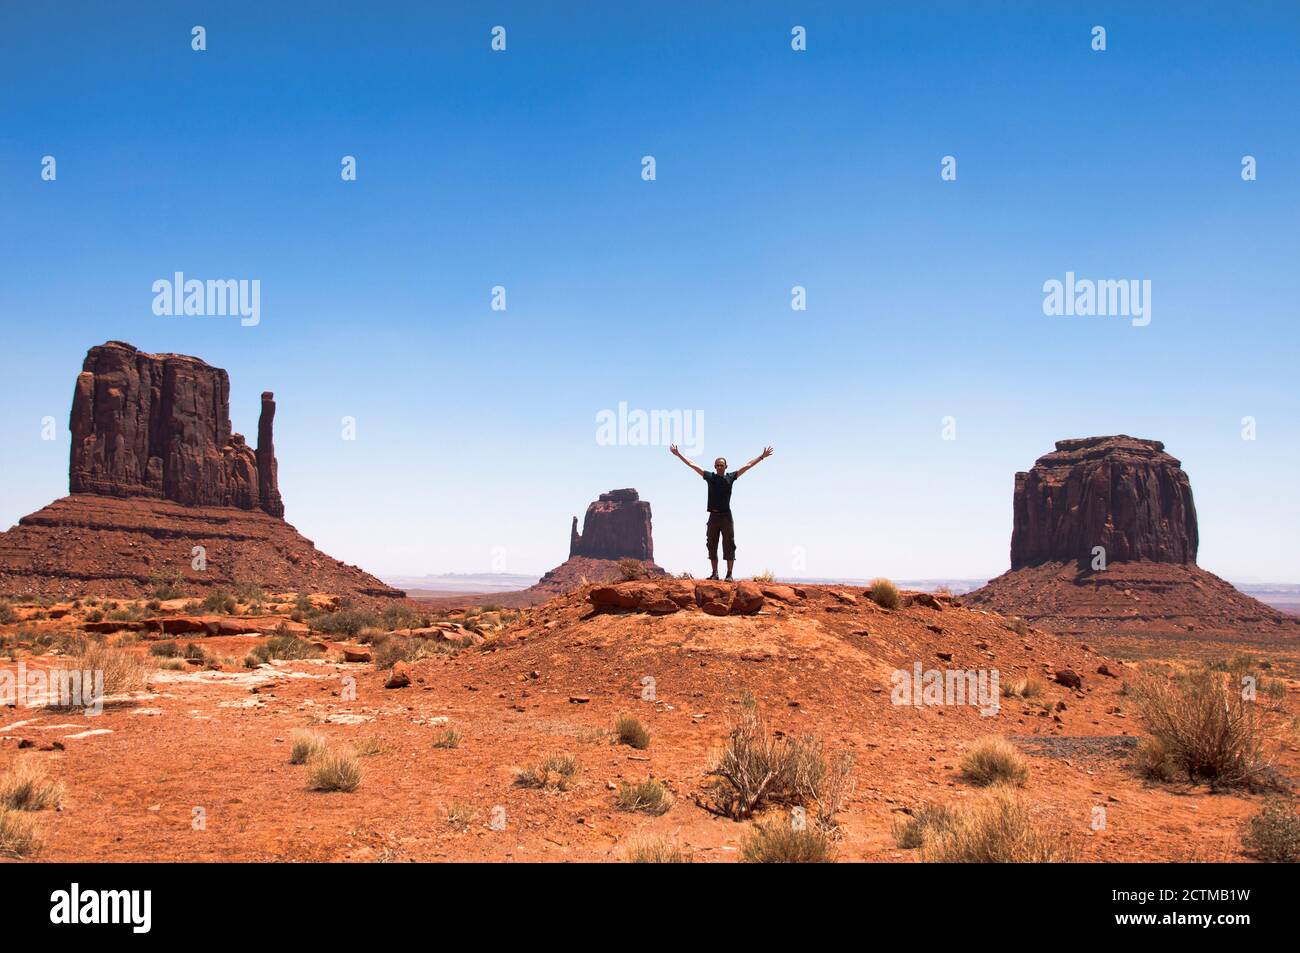 Quelques-unes des célèbres buttes de grès situées dans Monument Valley, une région du plateau du Colorado dans l'Utah, États-Unis. Un jeune homme avec les bras ouverts dedans Banque D'Images